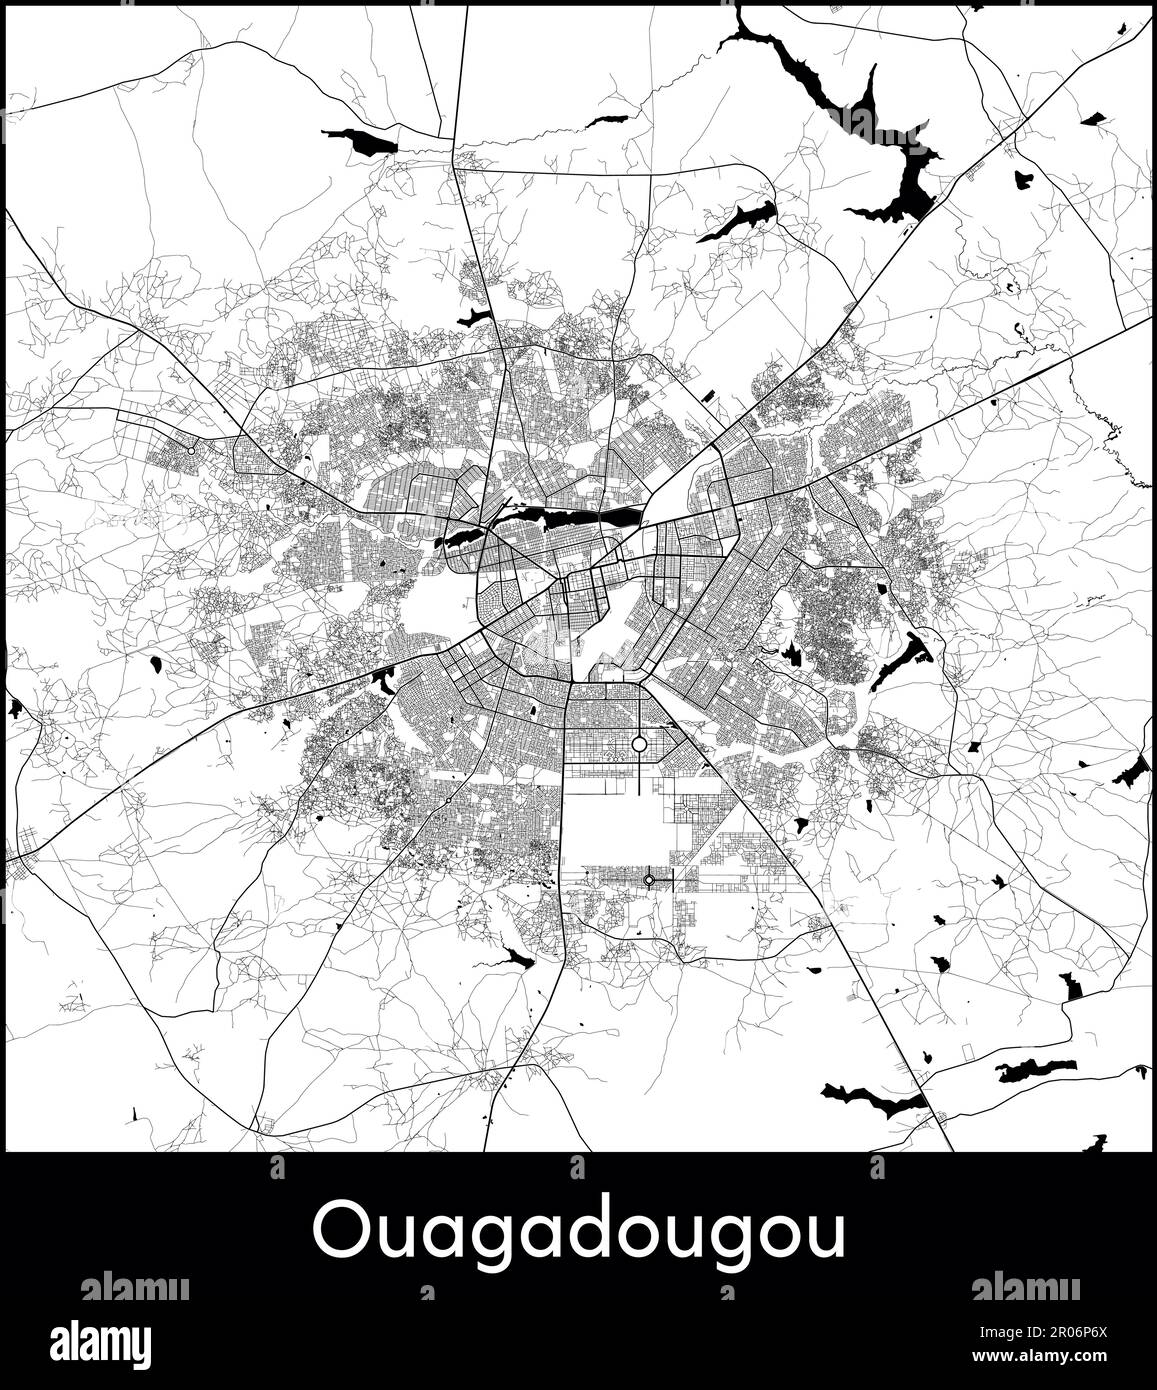 City Map Africa Burkina Faso Ouagadougou vector illustration Stock ...